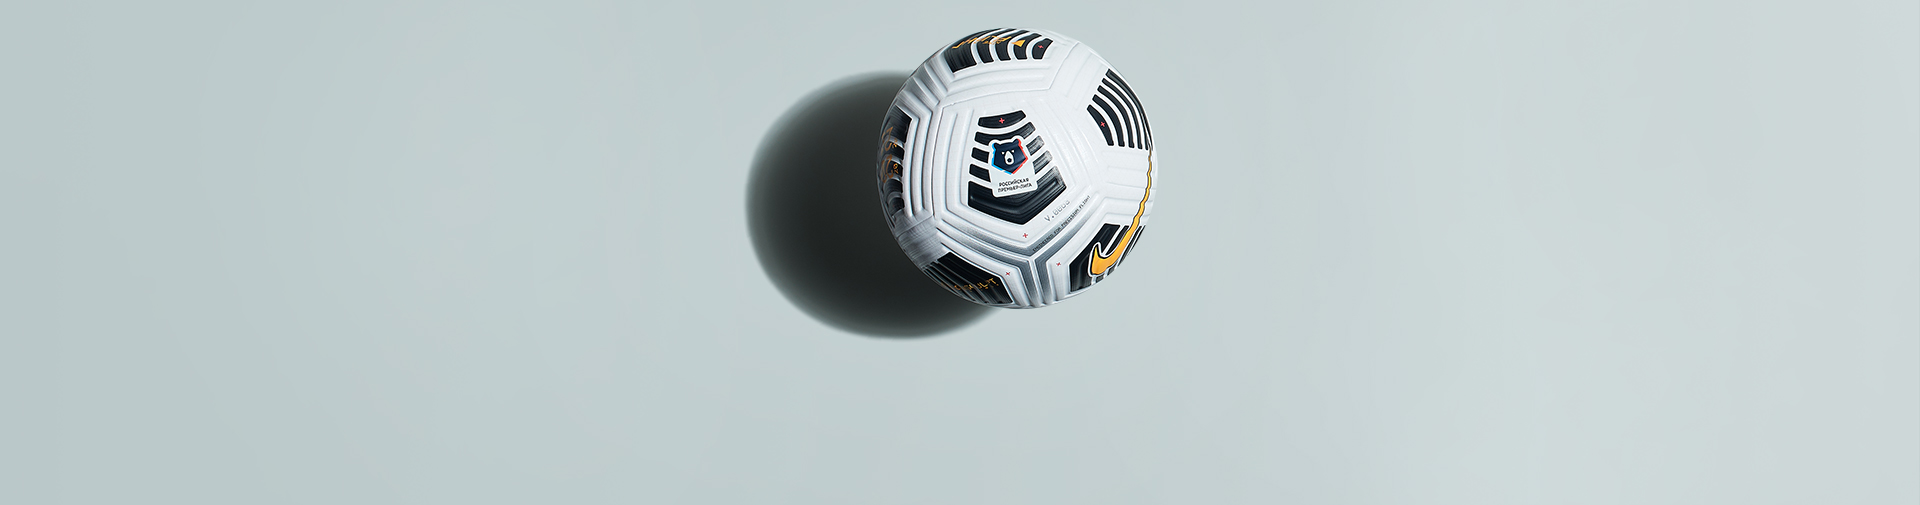 Инновационный футбольный мяч Nike Flight сезона 2020/21